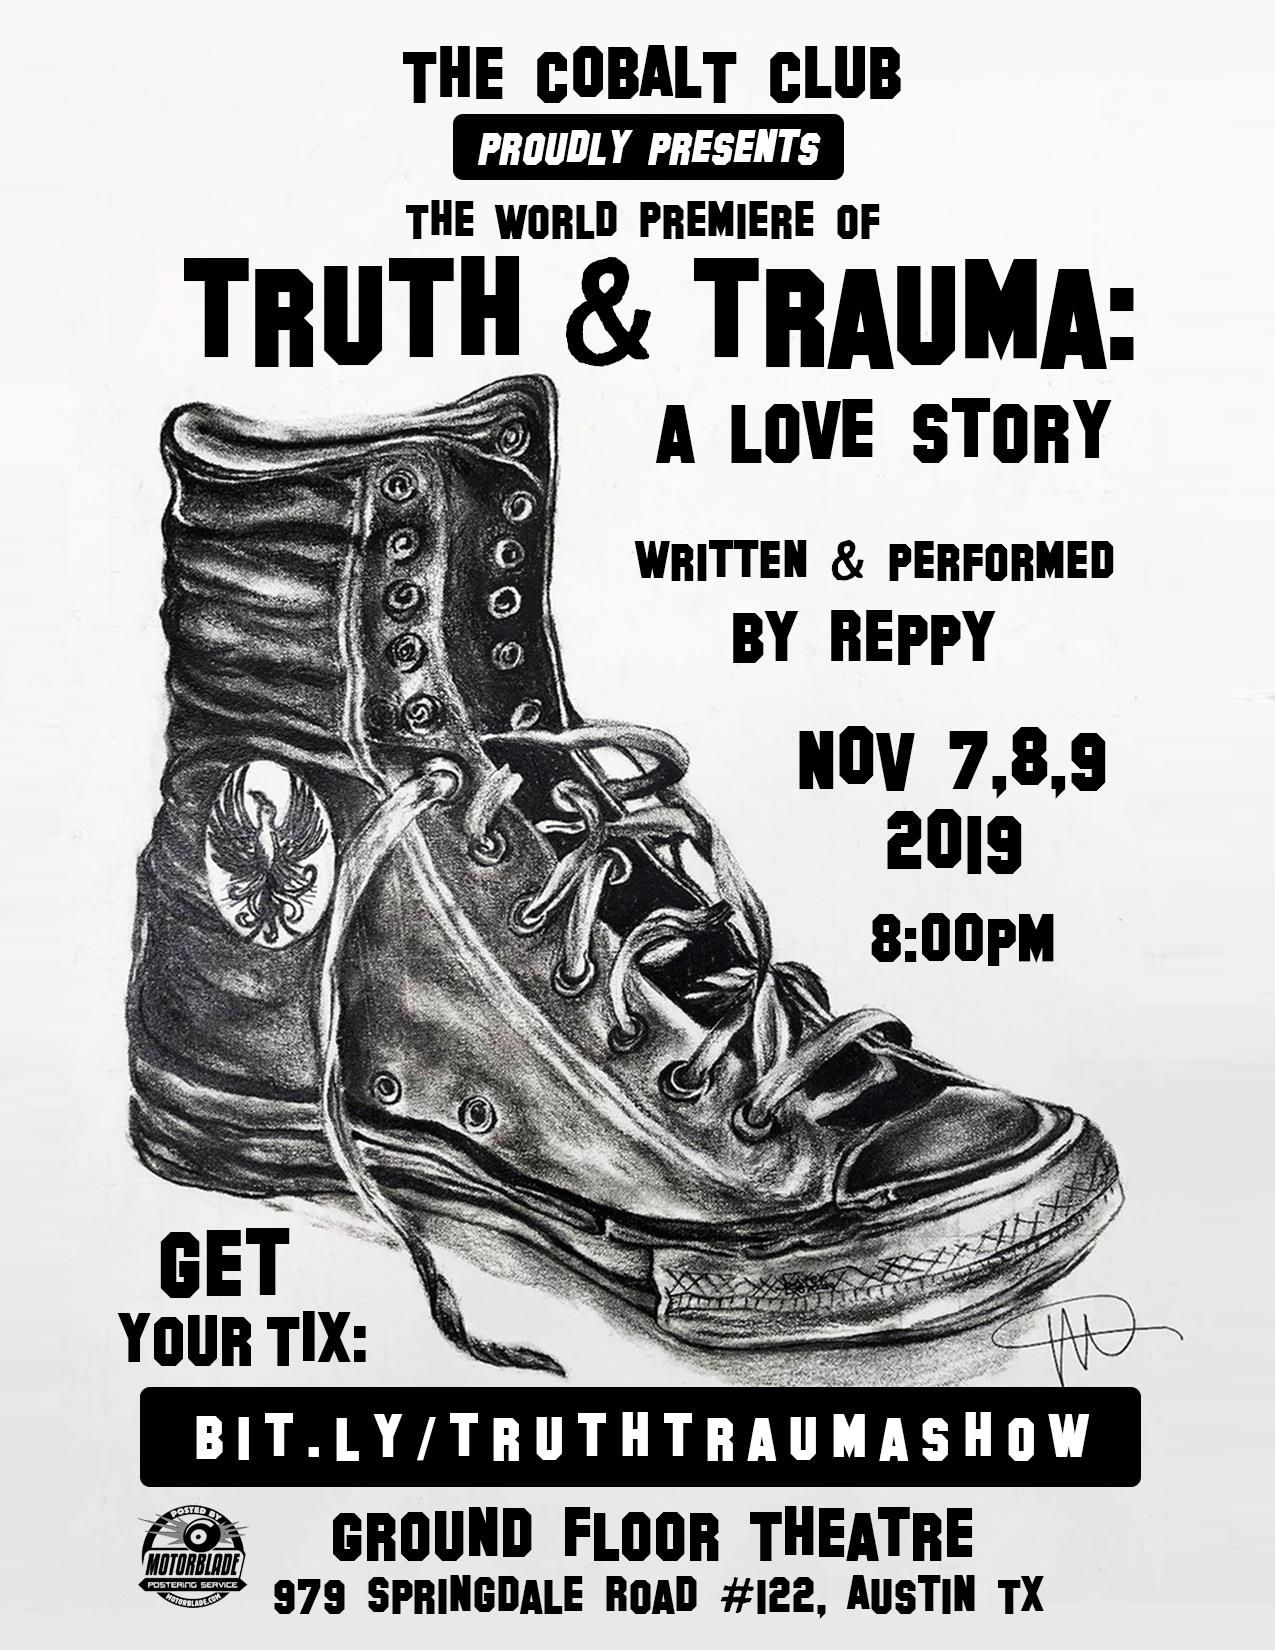 Truth & Trauma: A Love Story by Reppy